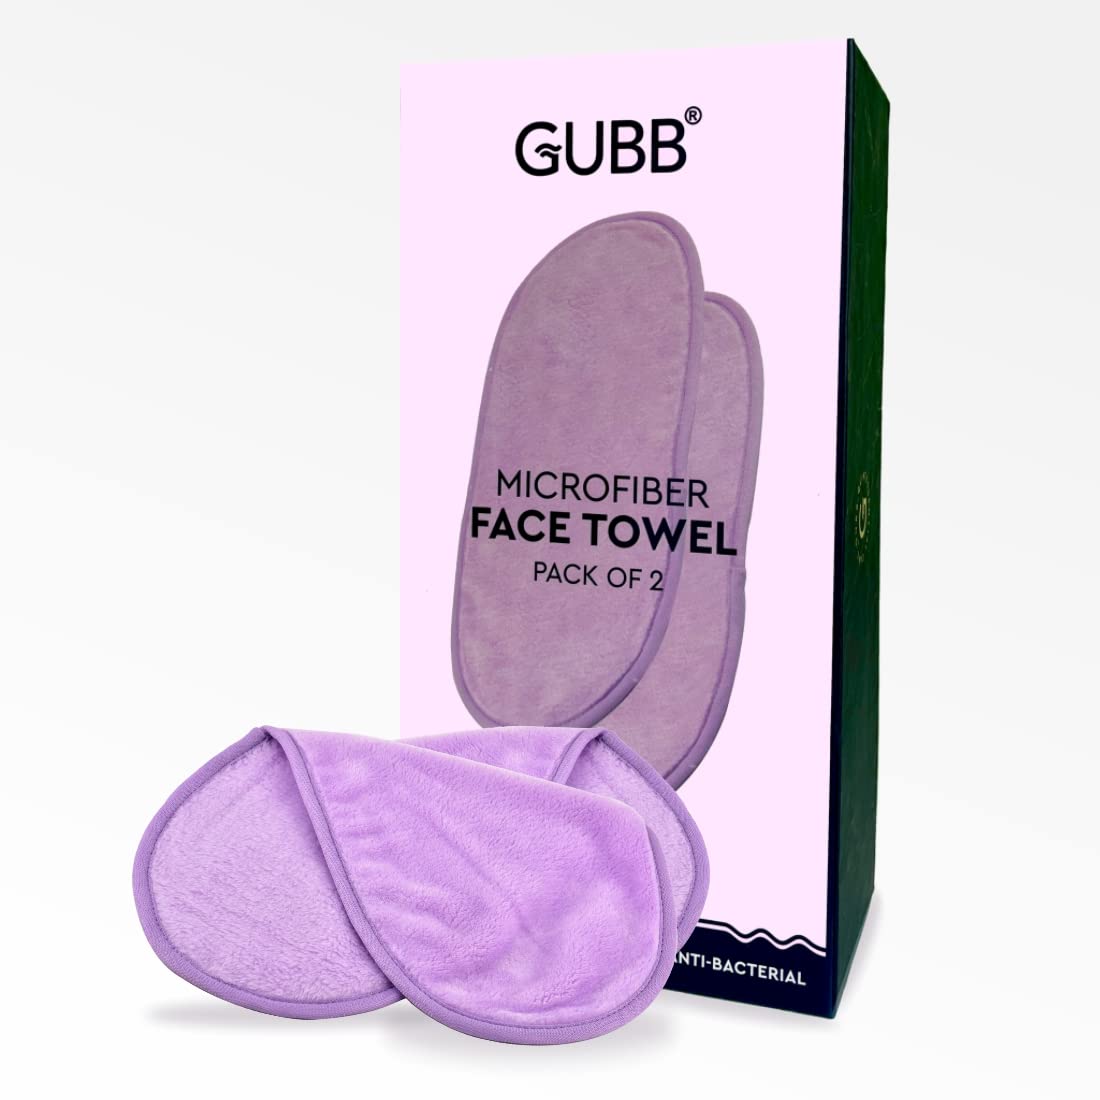 Microfiber Face Towel